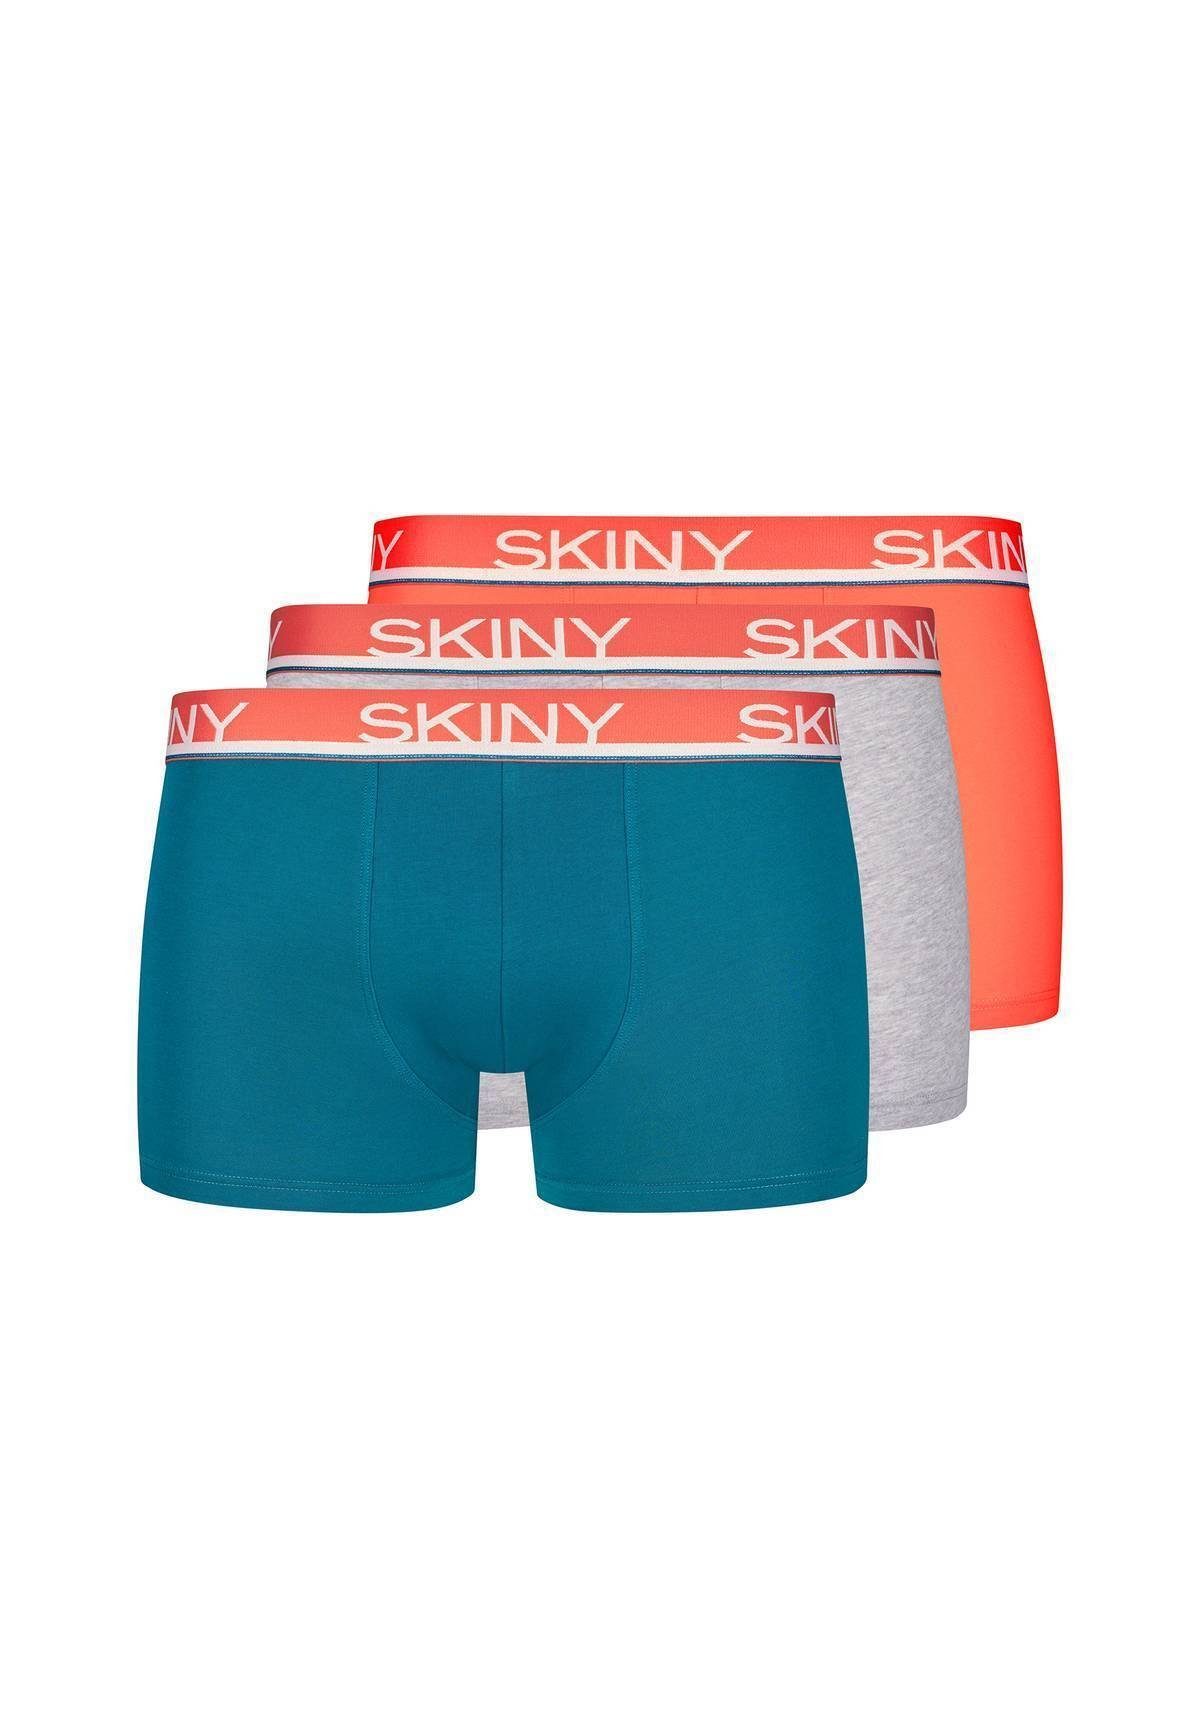 - Pants Herren 3er Boxer Skiny Shorts Trunks, Petrol/Grau/Orange Pack Boxer